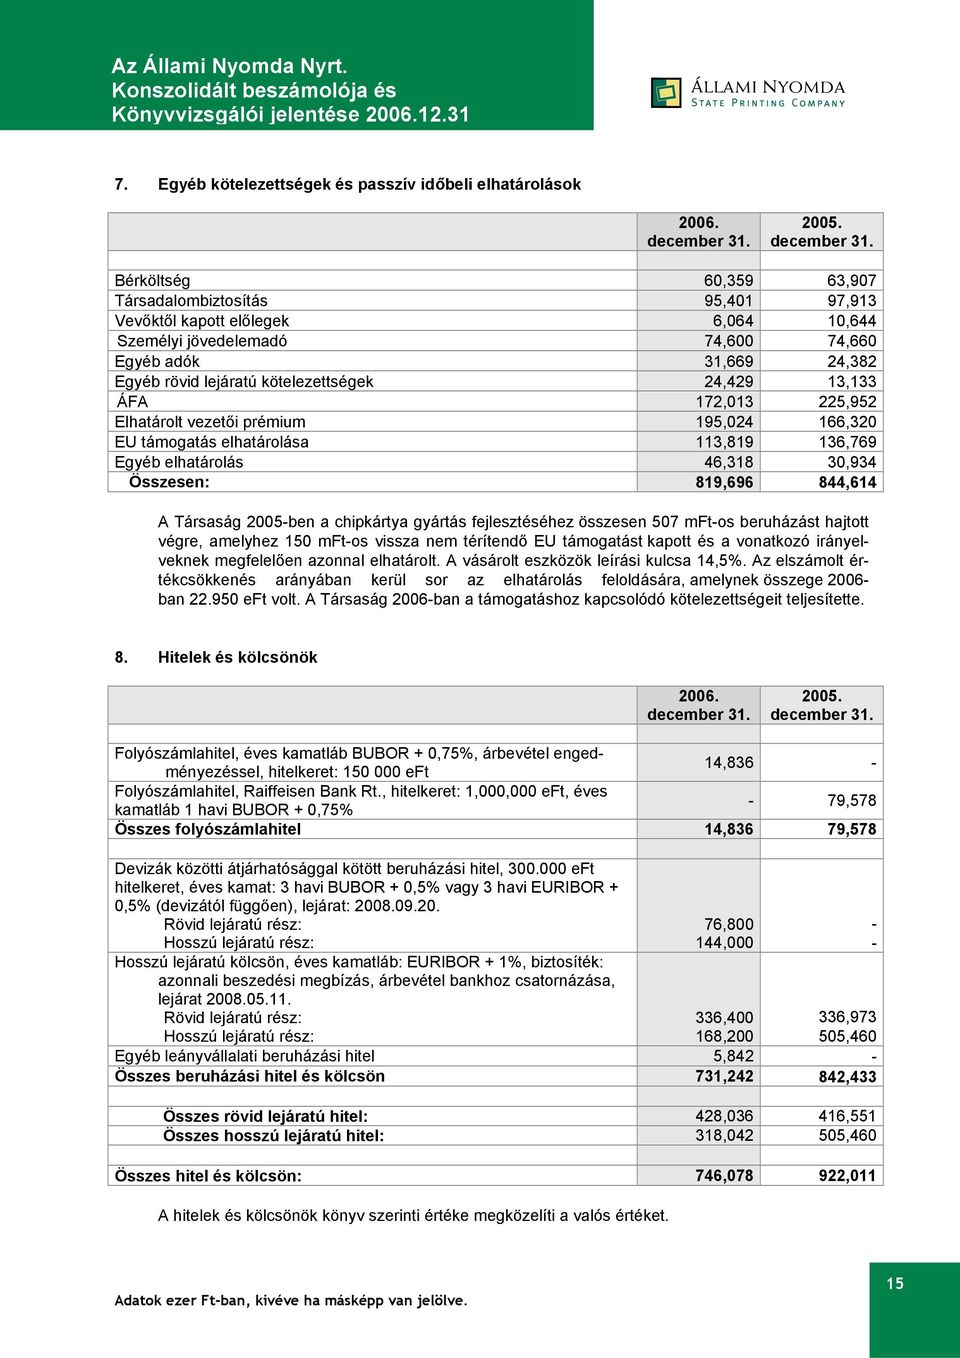 30,934 Összesen: 819,696 844,614 A Társaság 2005-ben a chipkártya gyártás fejlesztéséhez összesen 507 mft-os beruházást hajtott végre, amelyhez 150 mft-os vissza nem térítendő EU támogatást kapott és